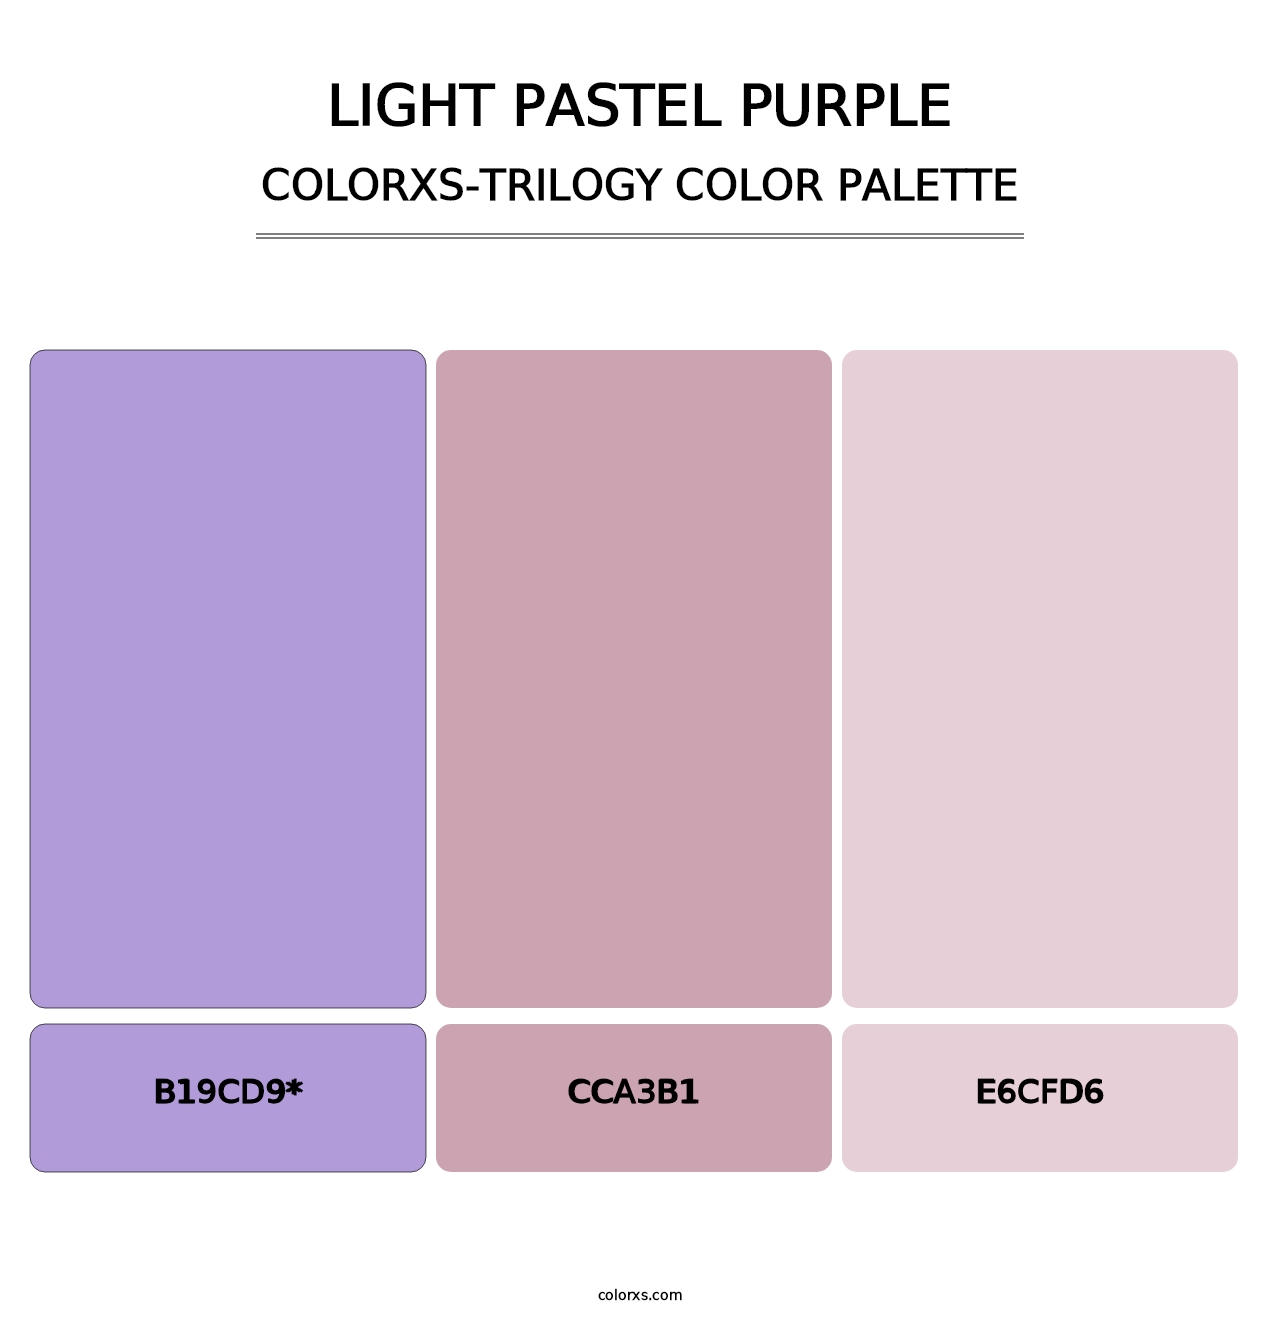 Light Pastel Purple - Colorxs Trilogy Palette